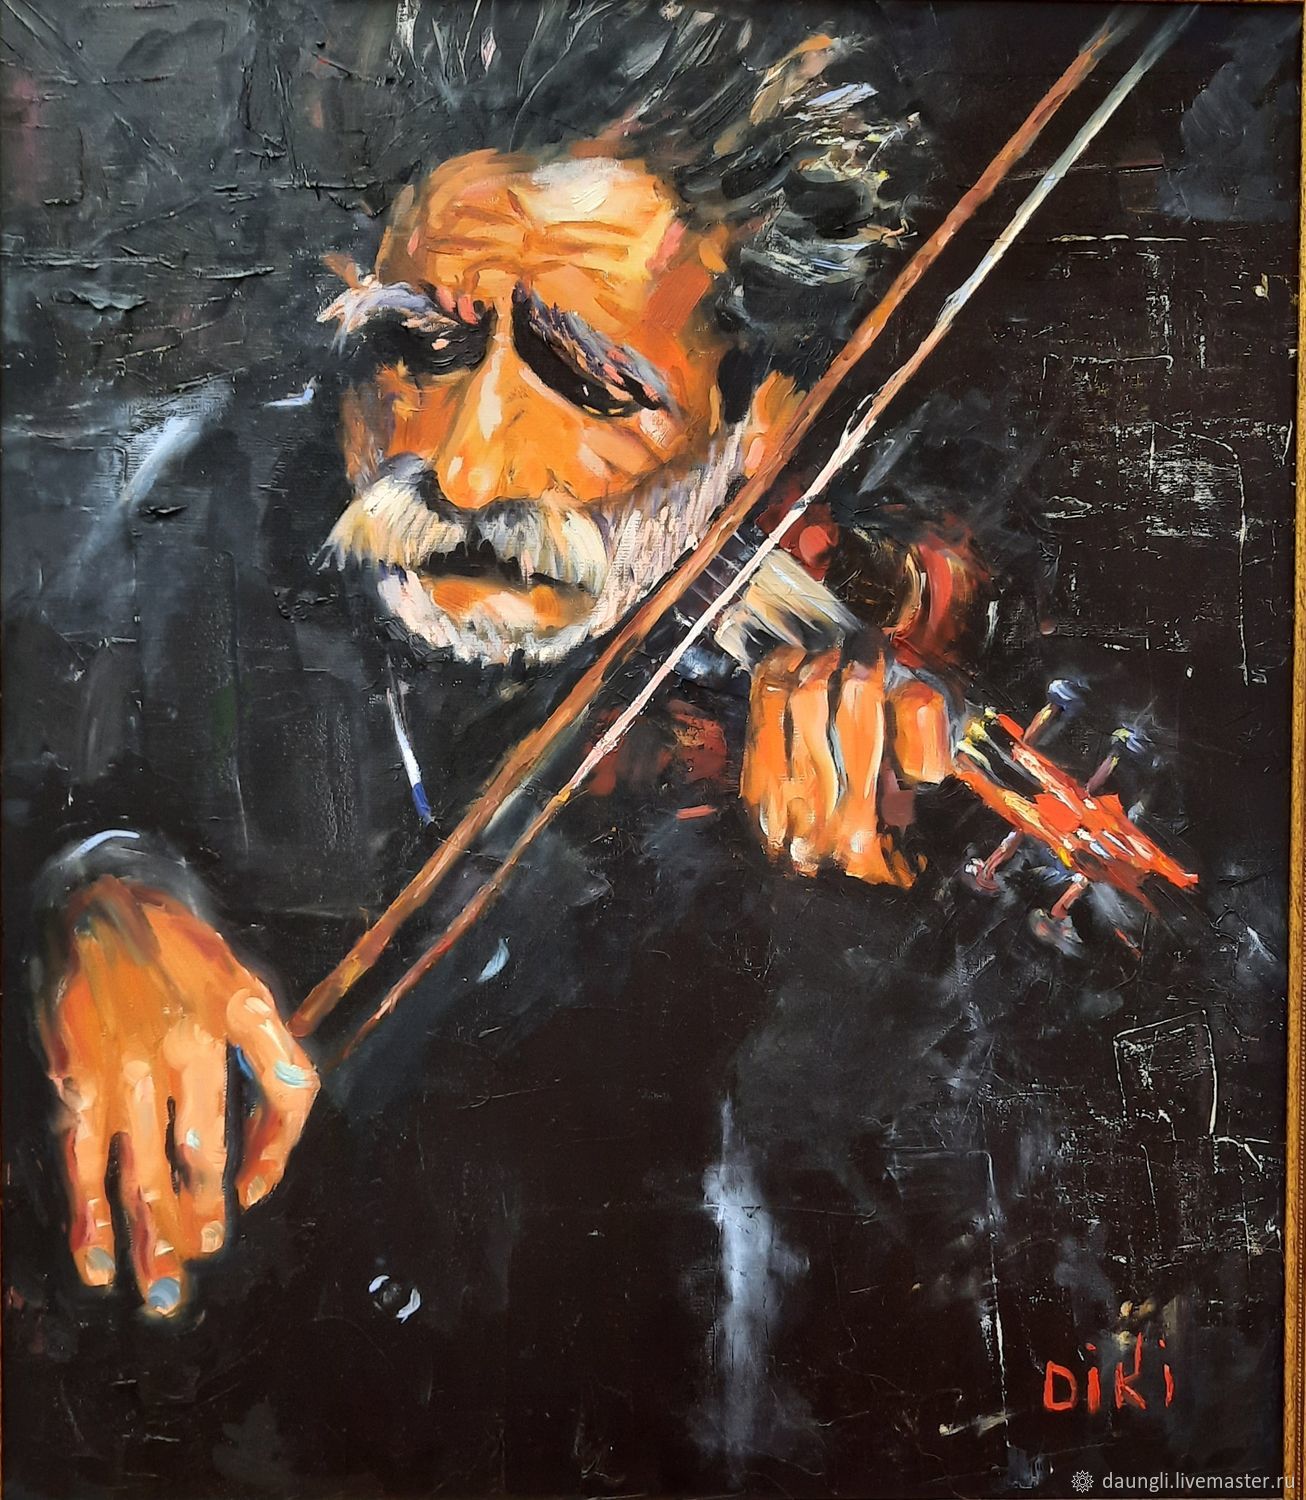  Старый скрипач, Картины, Новосибирск,  Фото №1